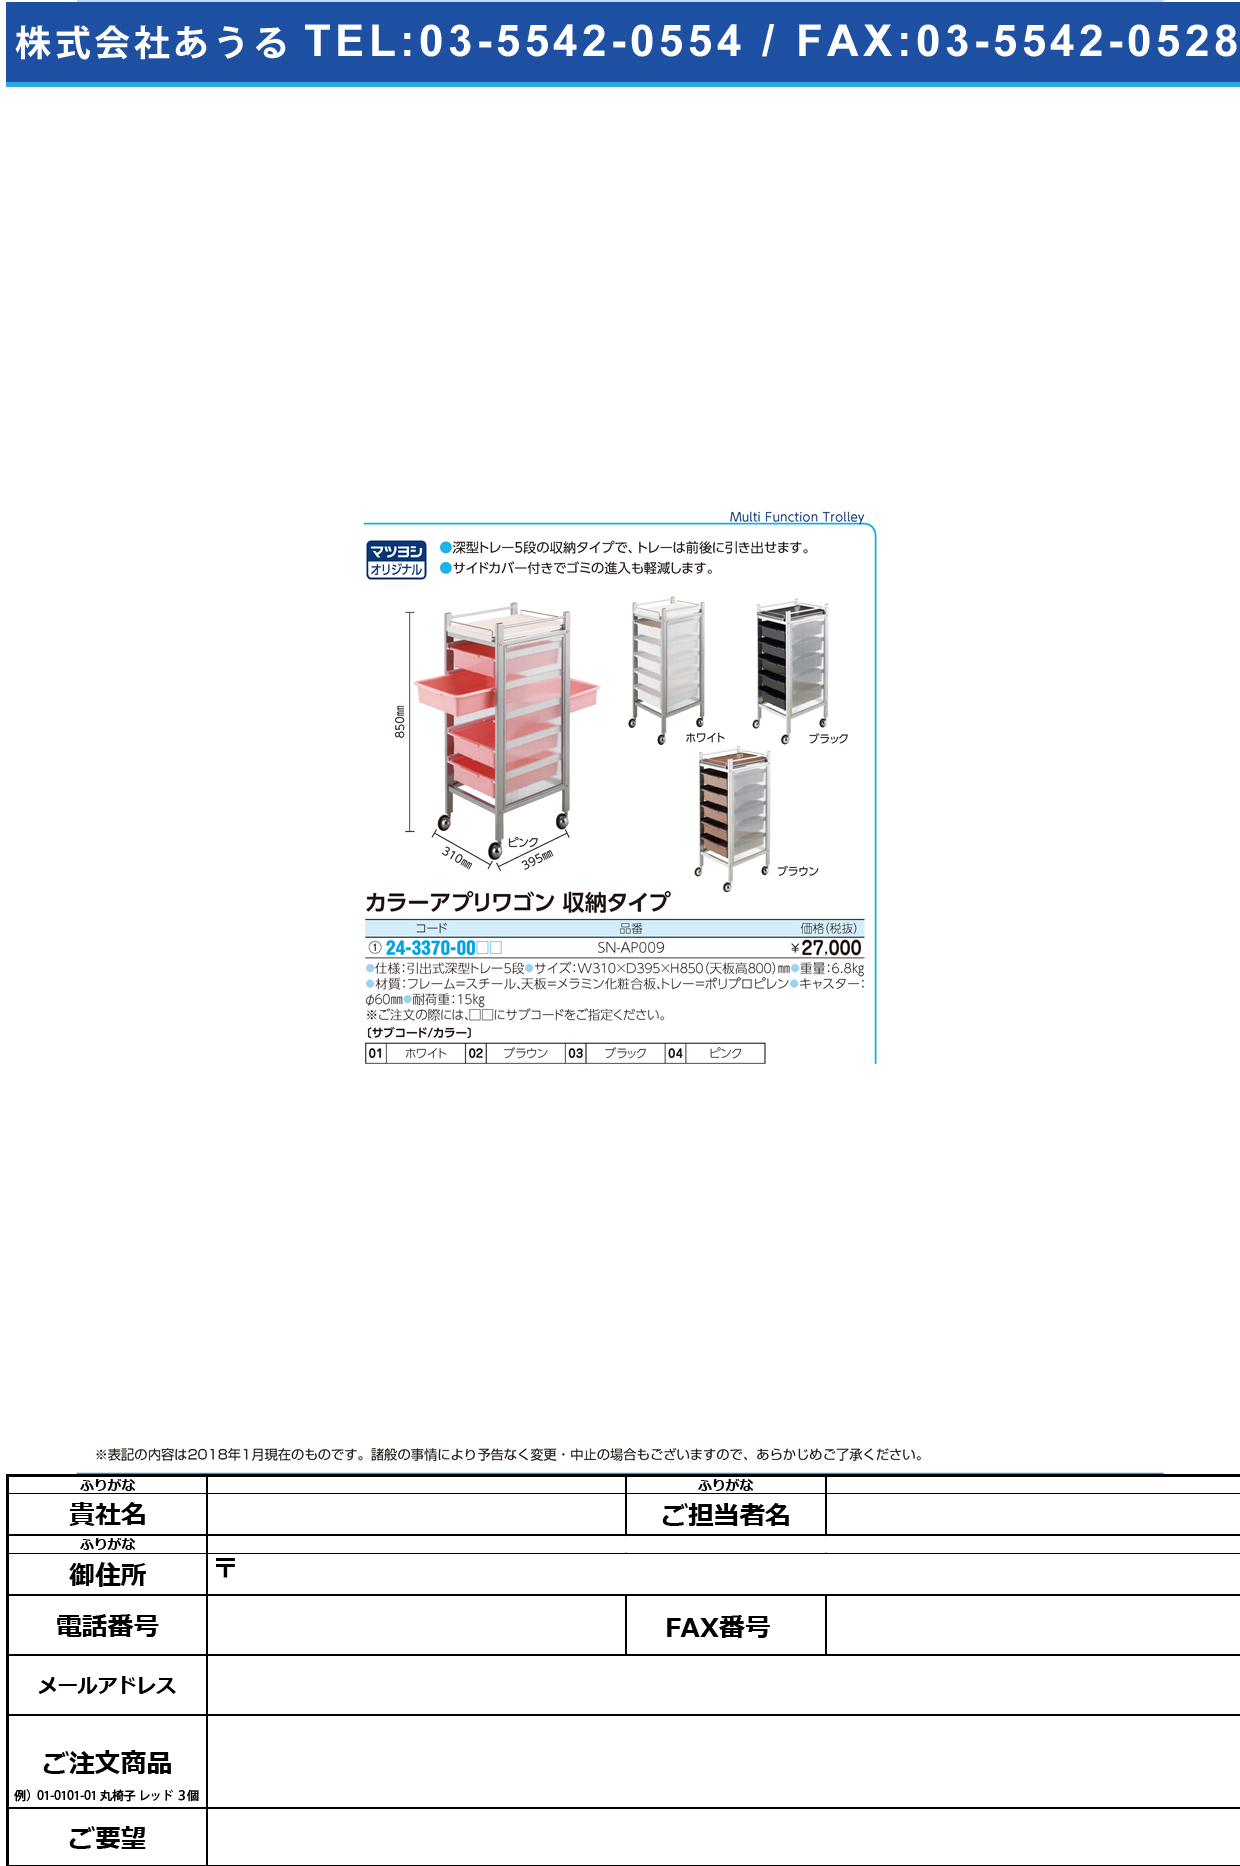 (24-3370-00)カラーアプリワゴン（収納タイプ） SN-AP009 ｶﾗｰｱﾌﾟﾘﾜｺﾞﾝｼｭｳﾉｳﾀｲﾌﾟ ピンク【1台単位】【2019年カタログ商品】